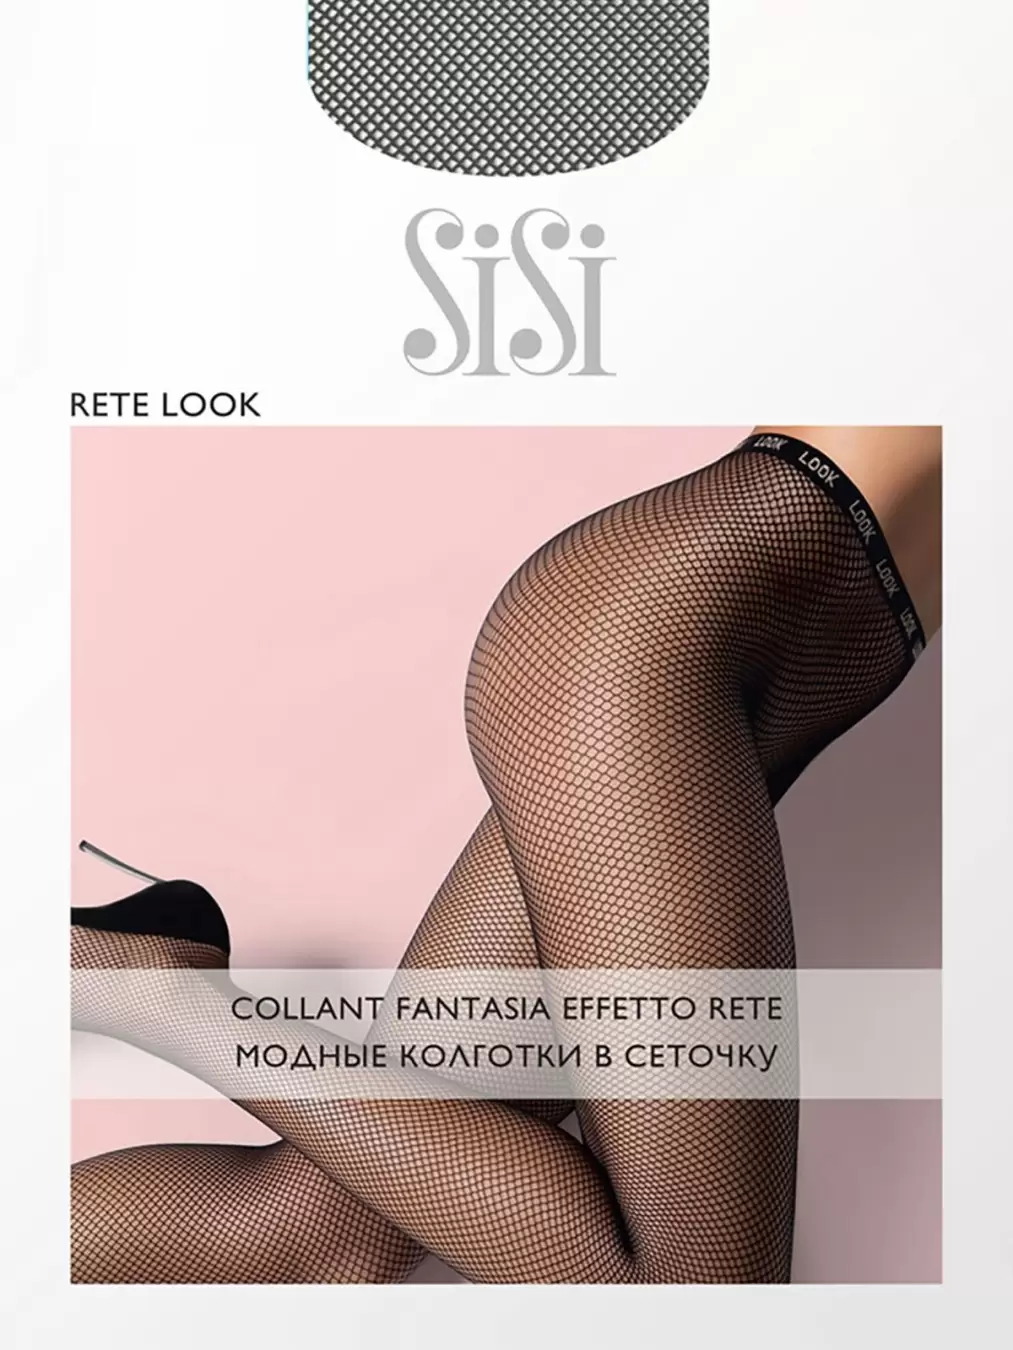 Sisi RETE LOOK, колготки купить недорого в интернет-магазине Nosok.ru Москва